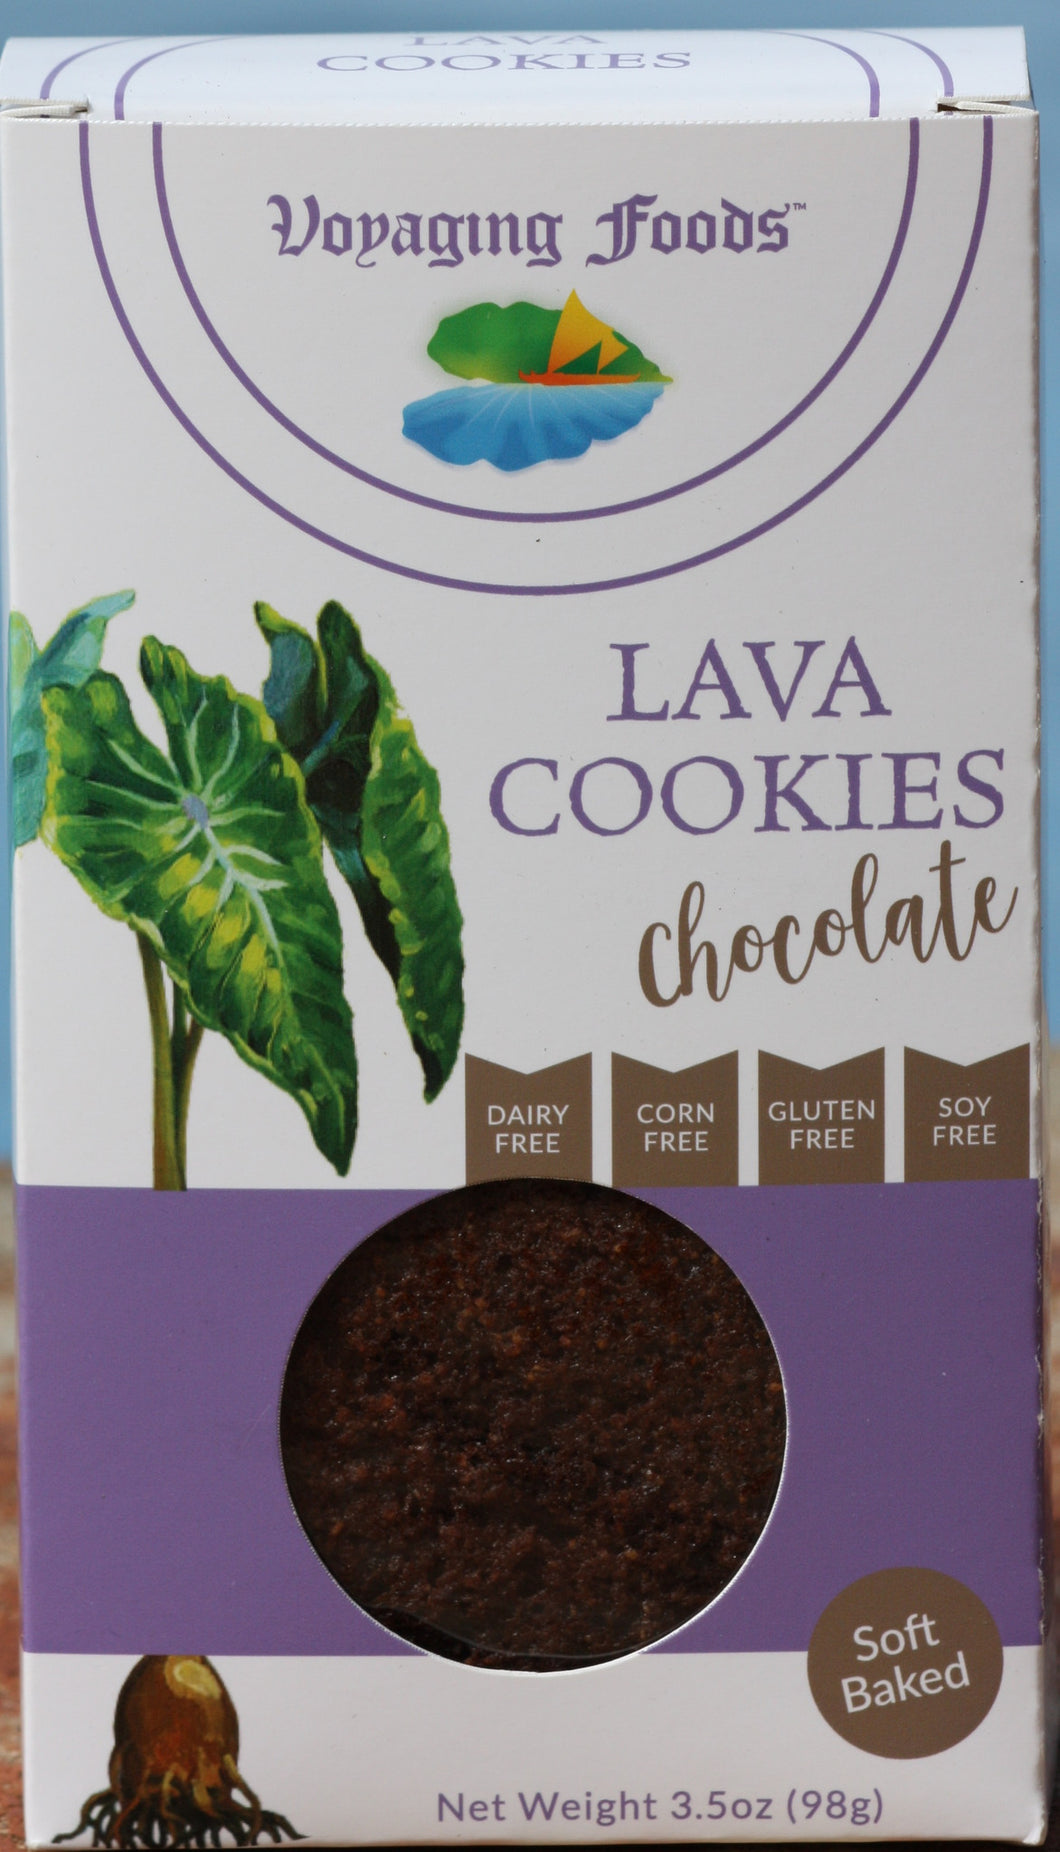 Chocolate Lava Cookies 5-pack - Voyaging Foods